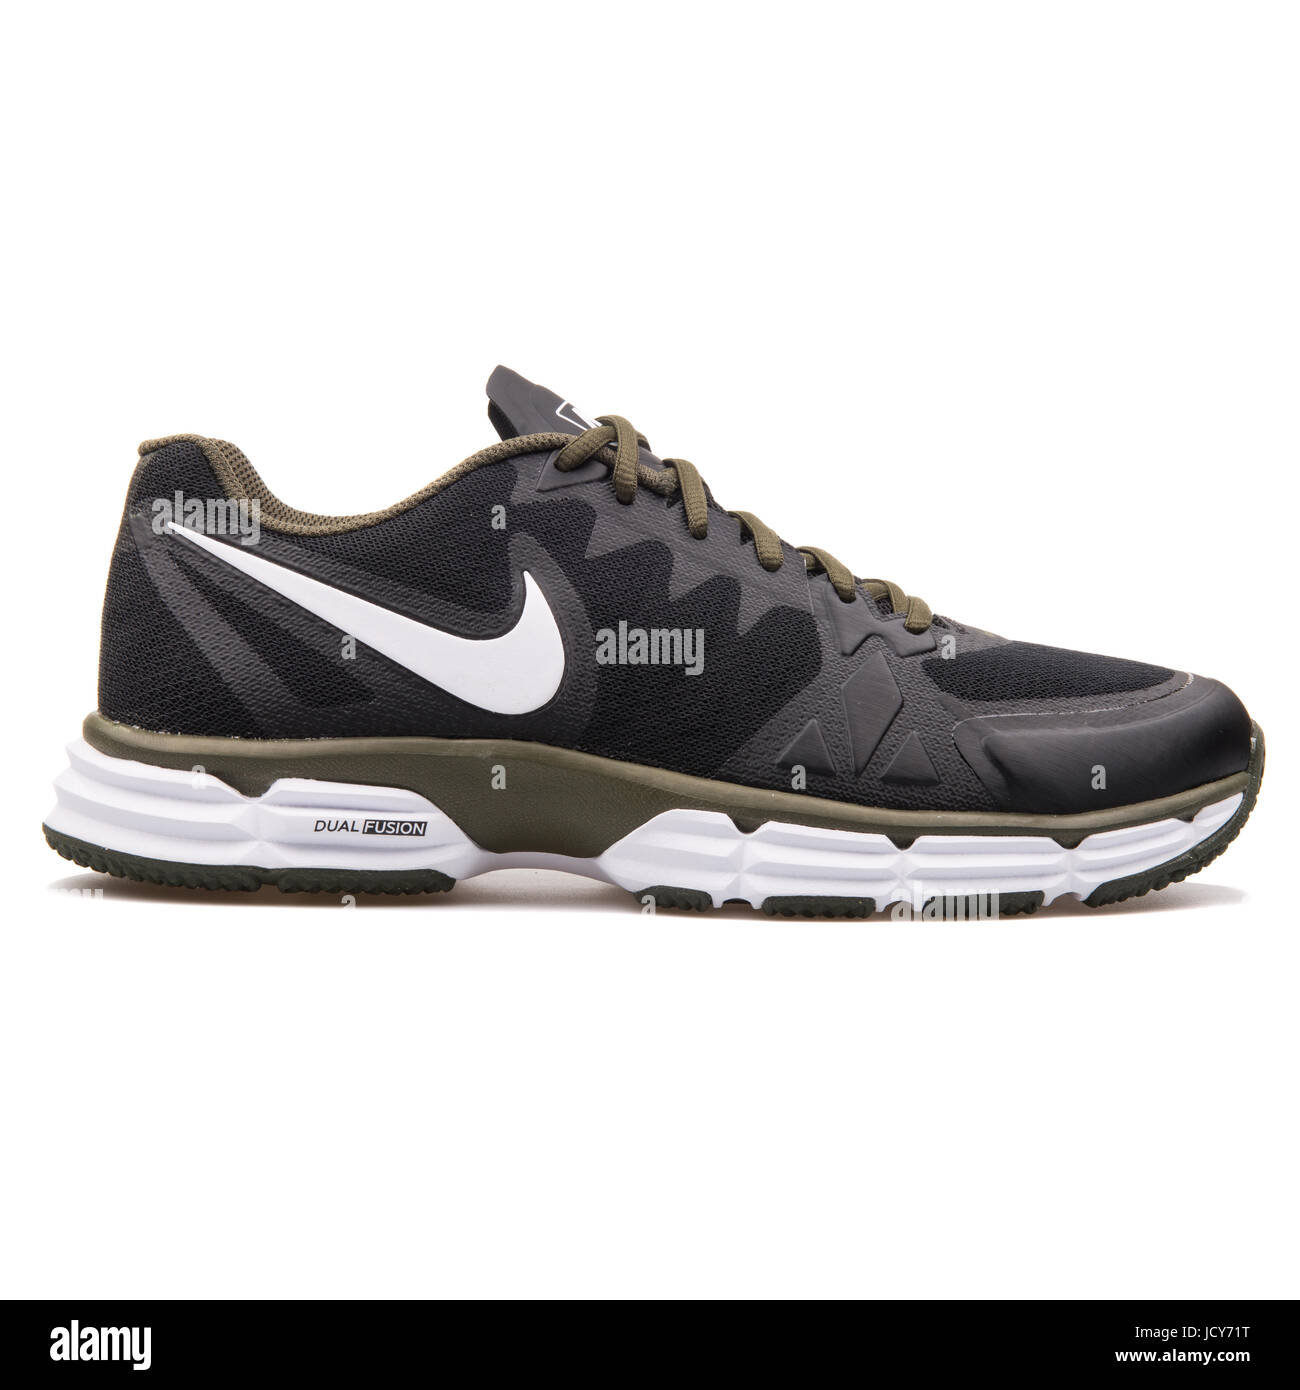 Nike Dual Fusion TR 6 Negro y caqui hombres calzados running - 704889-013 Fotografía stock - Alamy